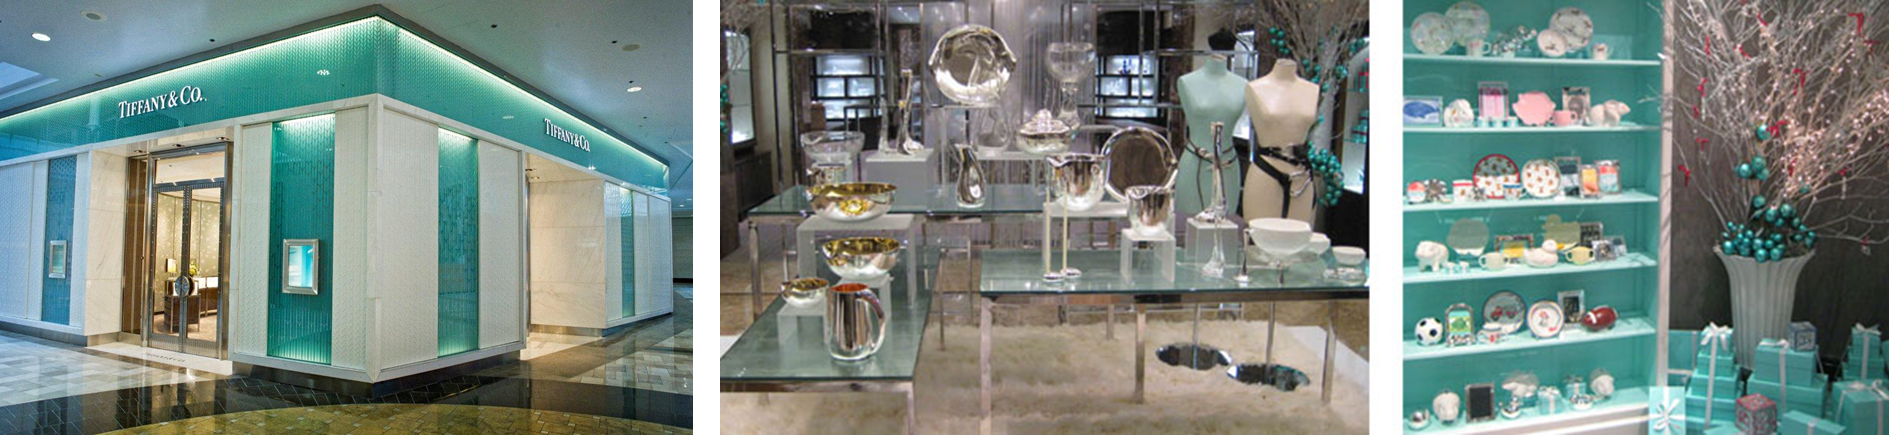 Inside Tiffany & Co.'s New Store Design Elements – WWD